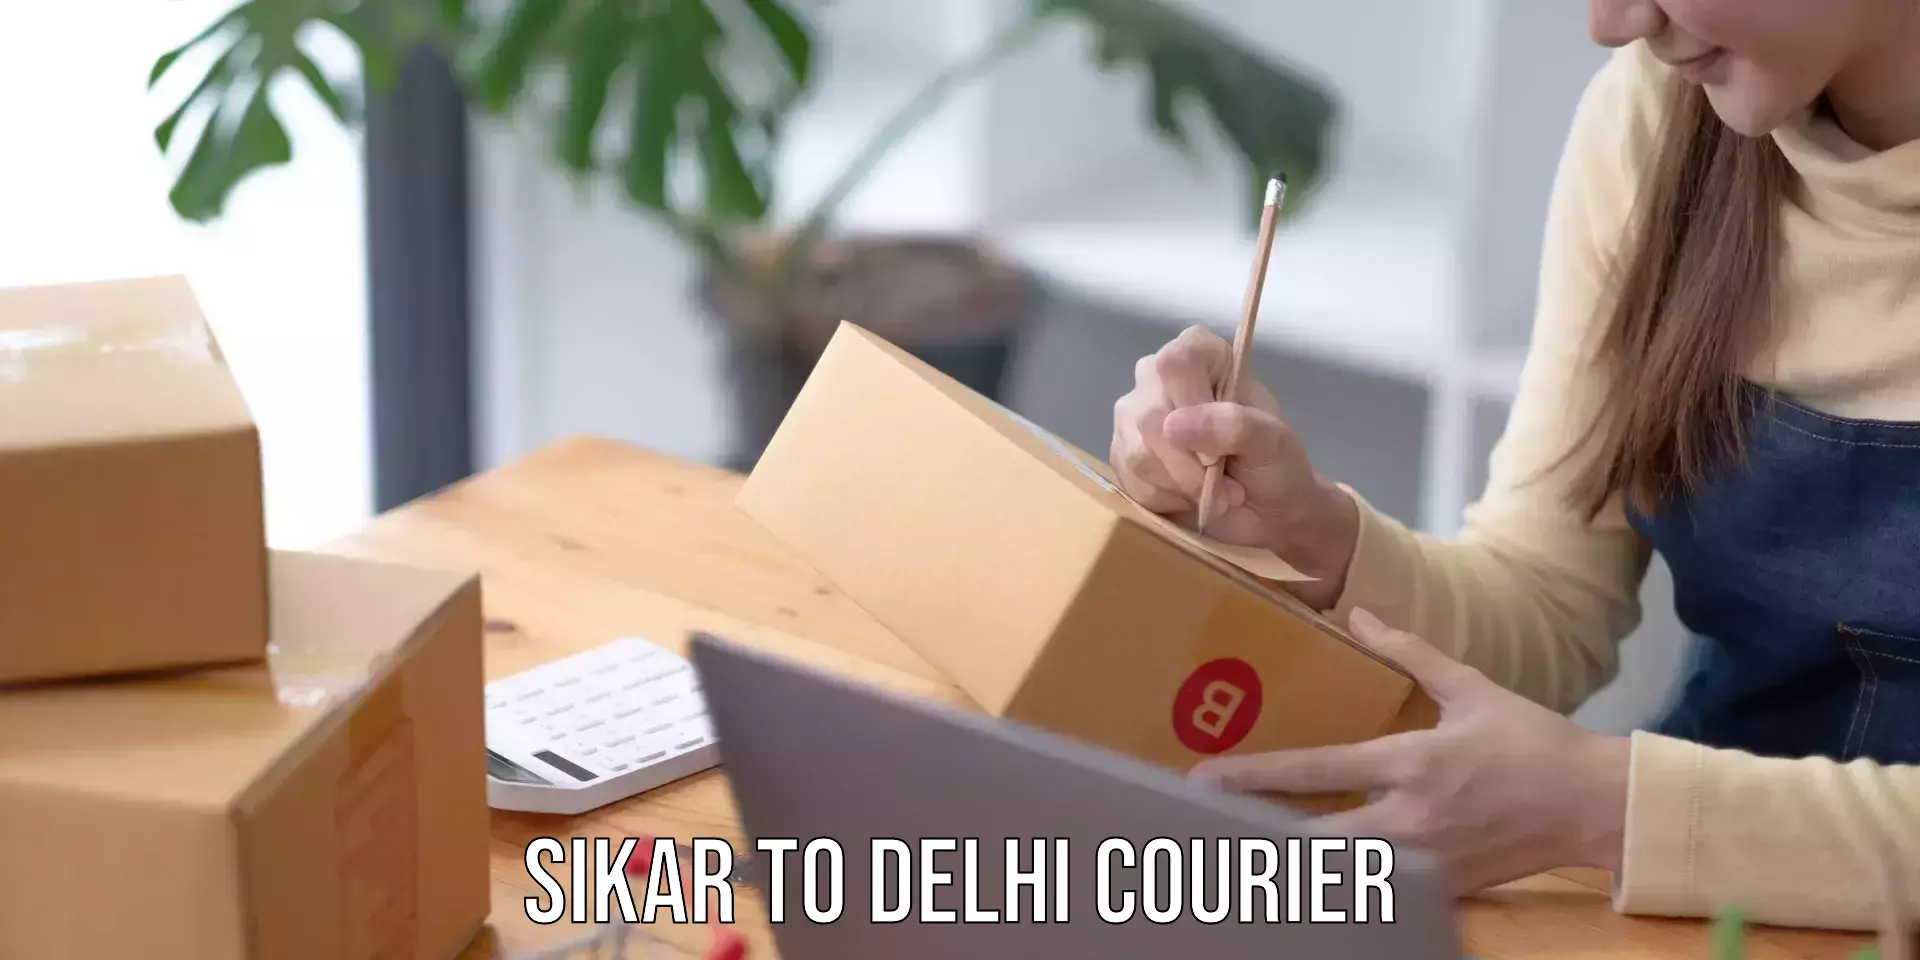 Bulk courier orders Sikar to Delhi